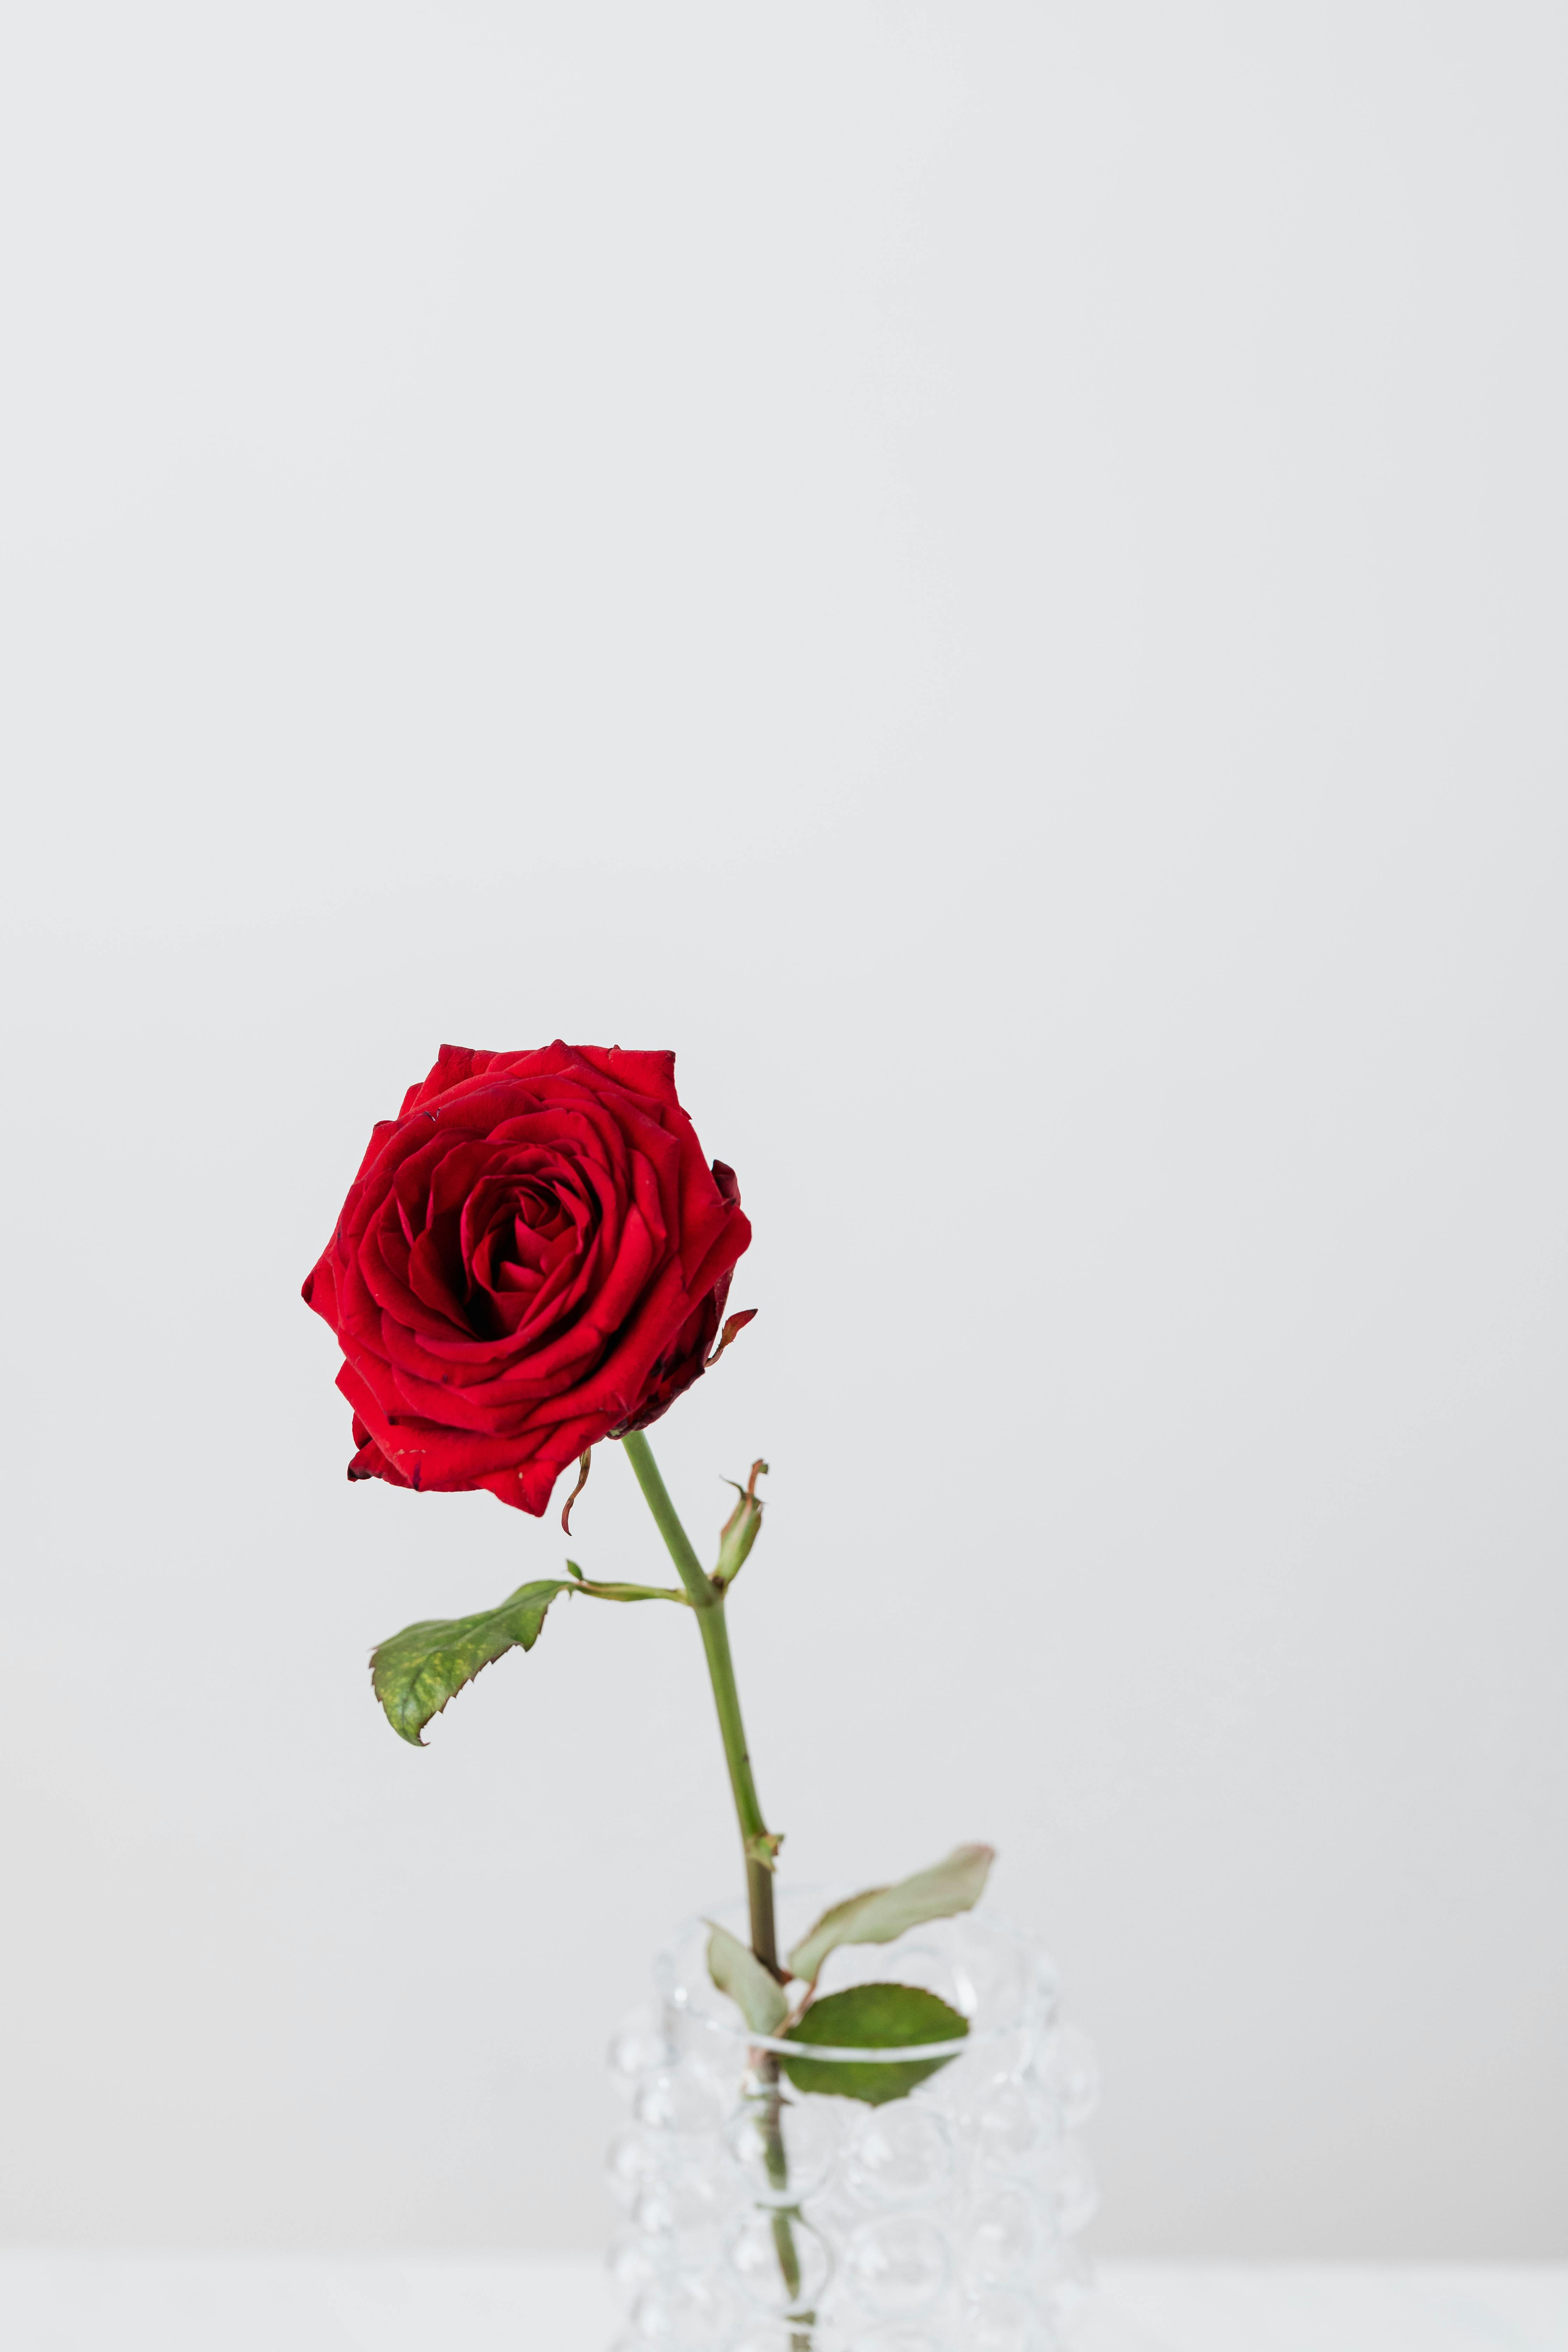 Chiếc lọ pha lê sang trọng, phối hợp hoàn hảo với hoa hồng đỏ tươi khỏe, đem đến một không gian sống động và đẳng cấp. Hãy cùng chiêm ngưỡng và cảm nhận.